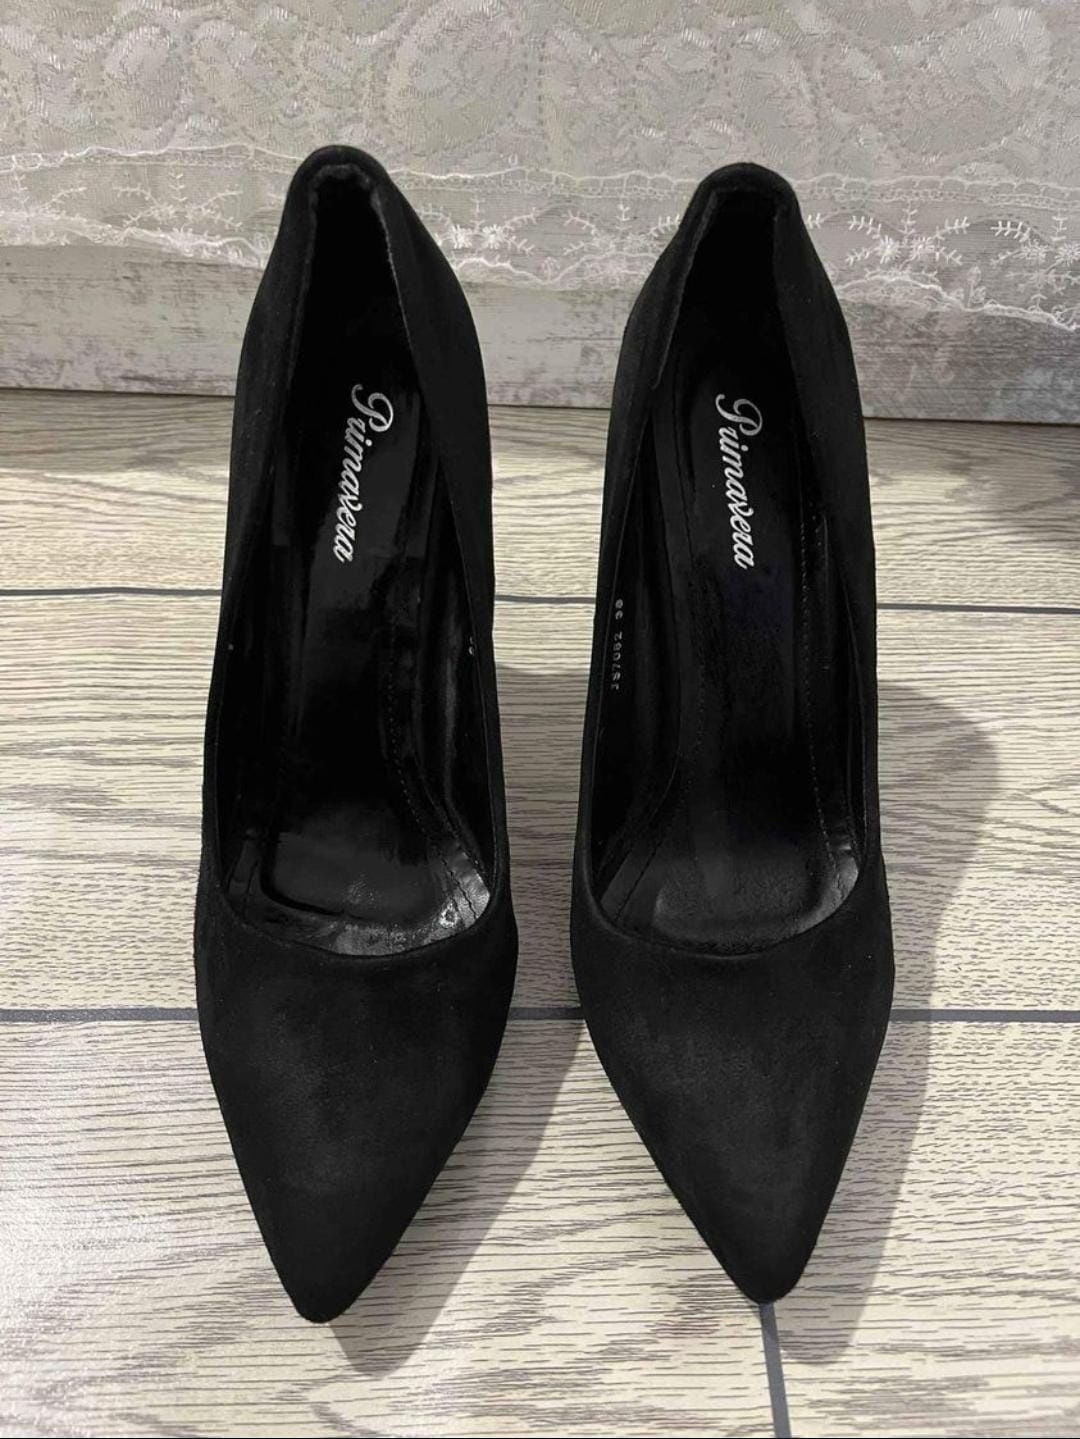 Дамски обувки стилето.
38 номер, черен цвят.
Като нови без забележки!